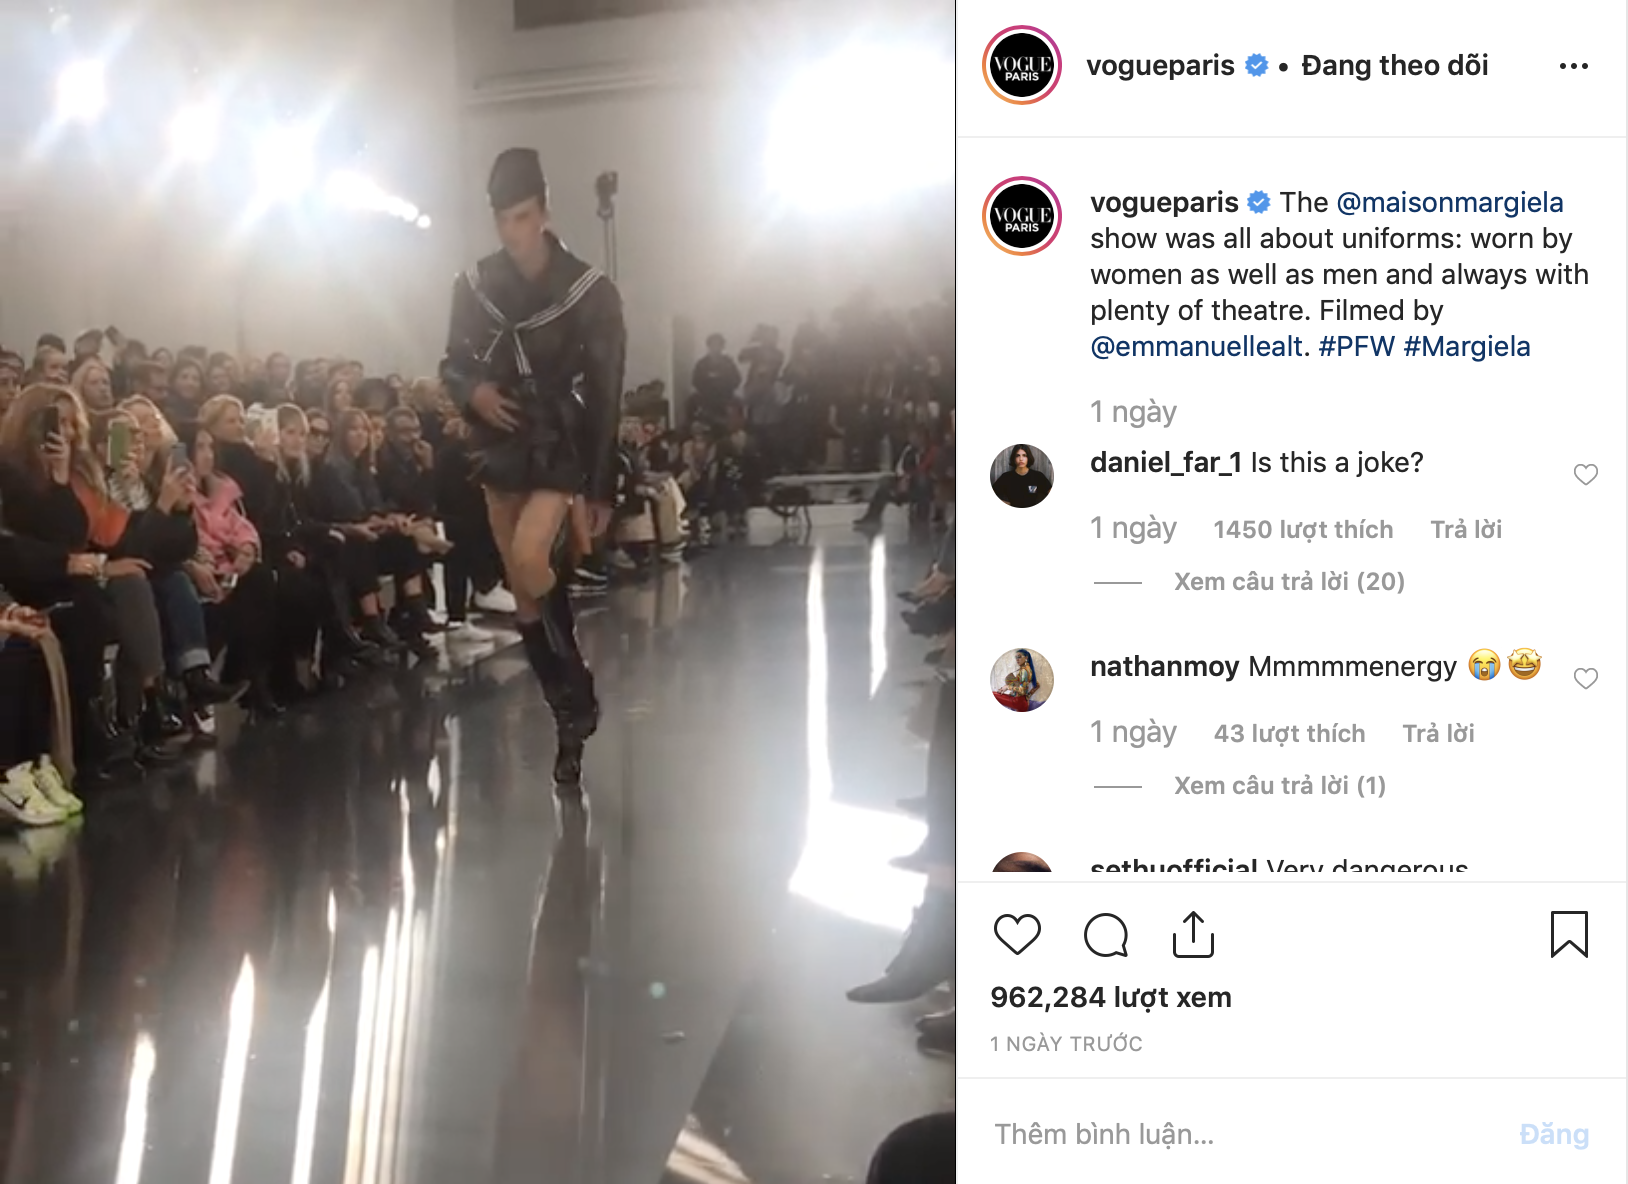 Mẫu nam với màn catwalk oằn tà là vằn gây sốt Paris Fashion Week khiến Rihanna cũng phải ấn tượng, bấm follow trên Instagram - Ảnh 5.